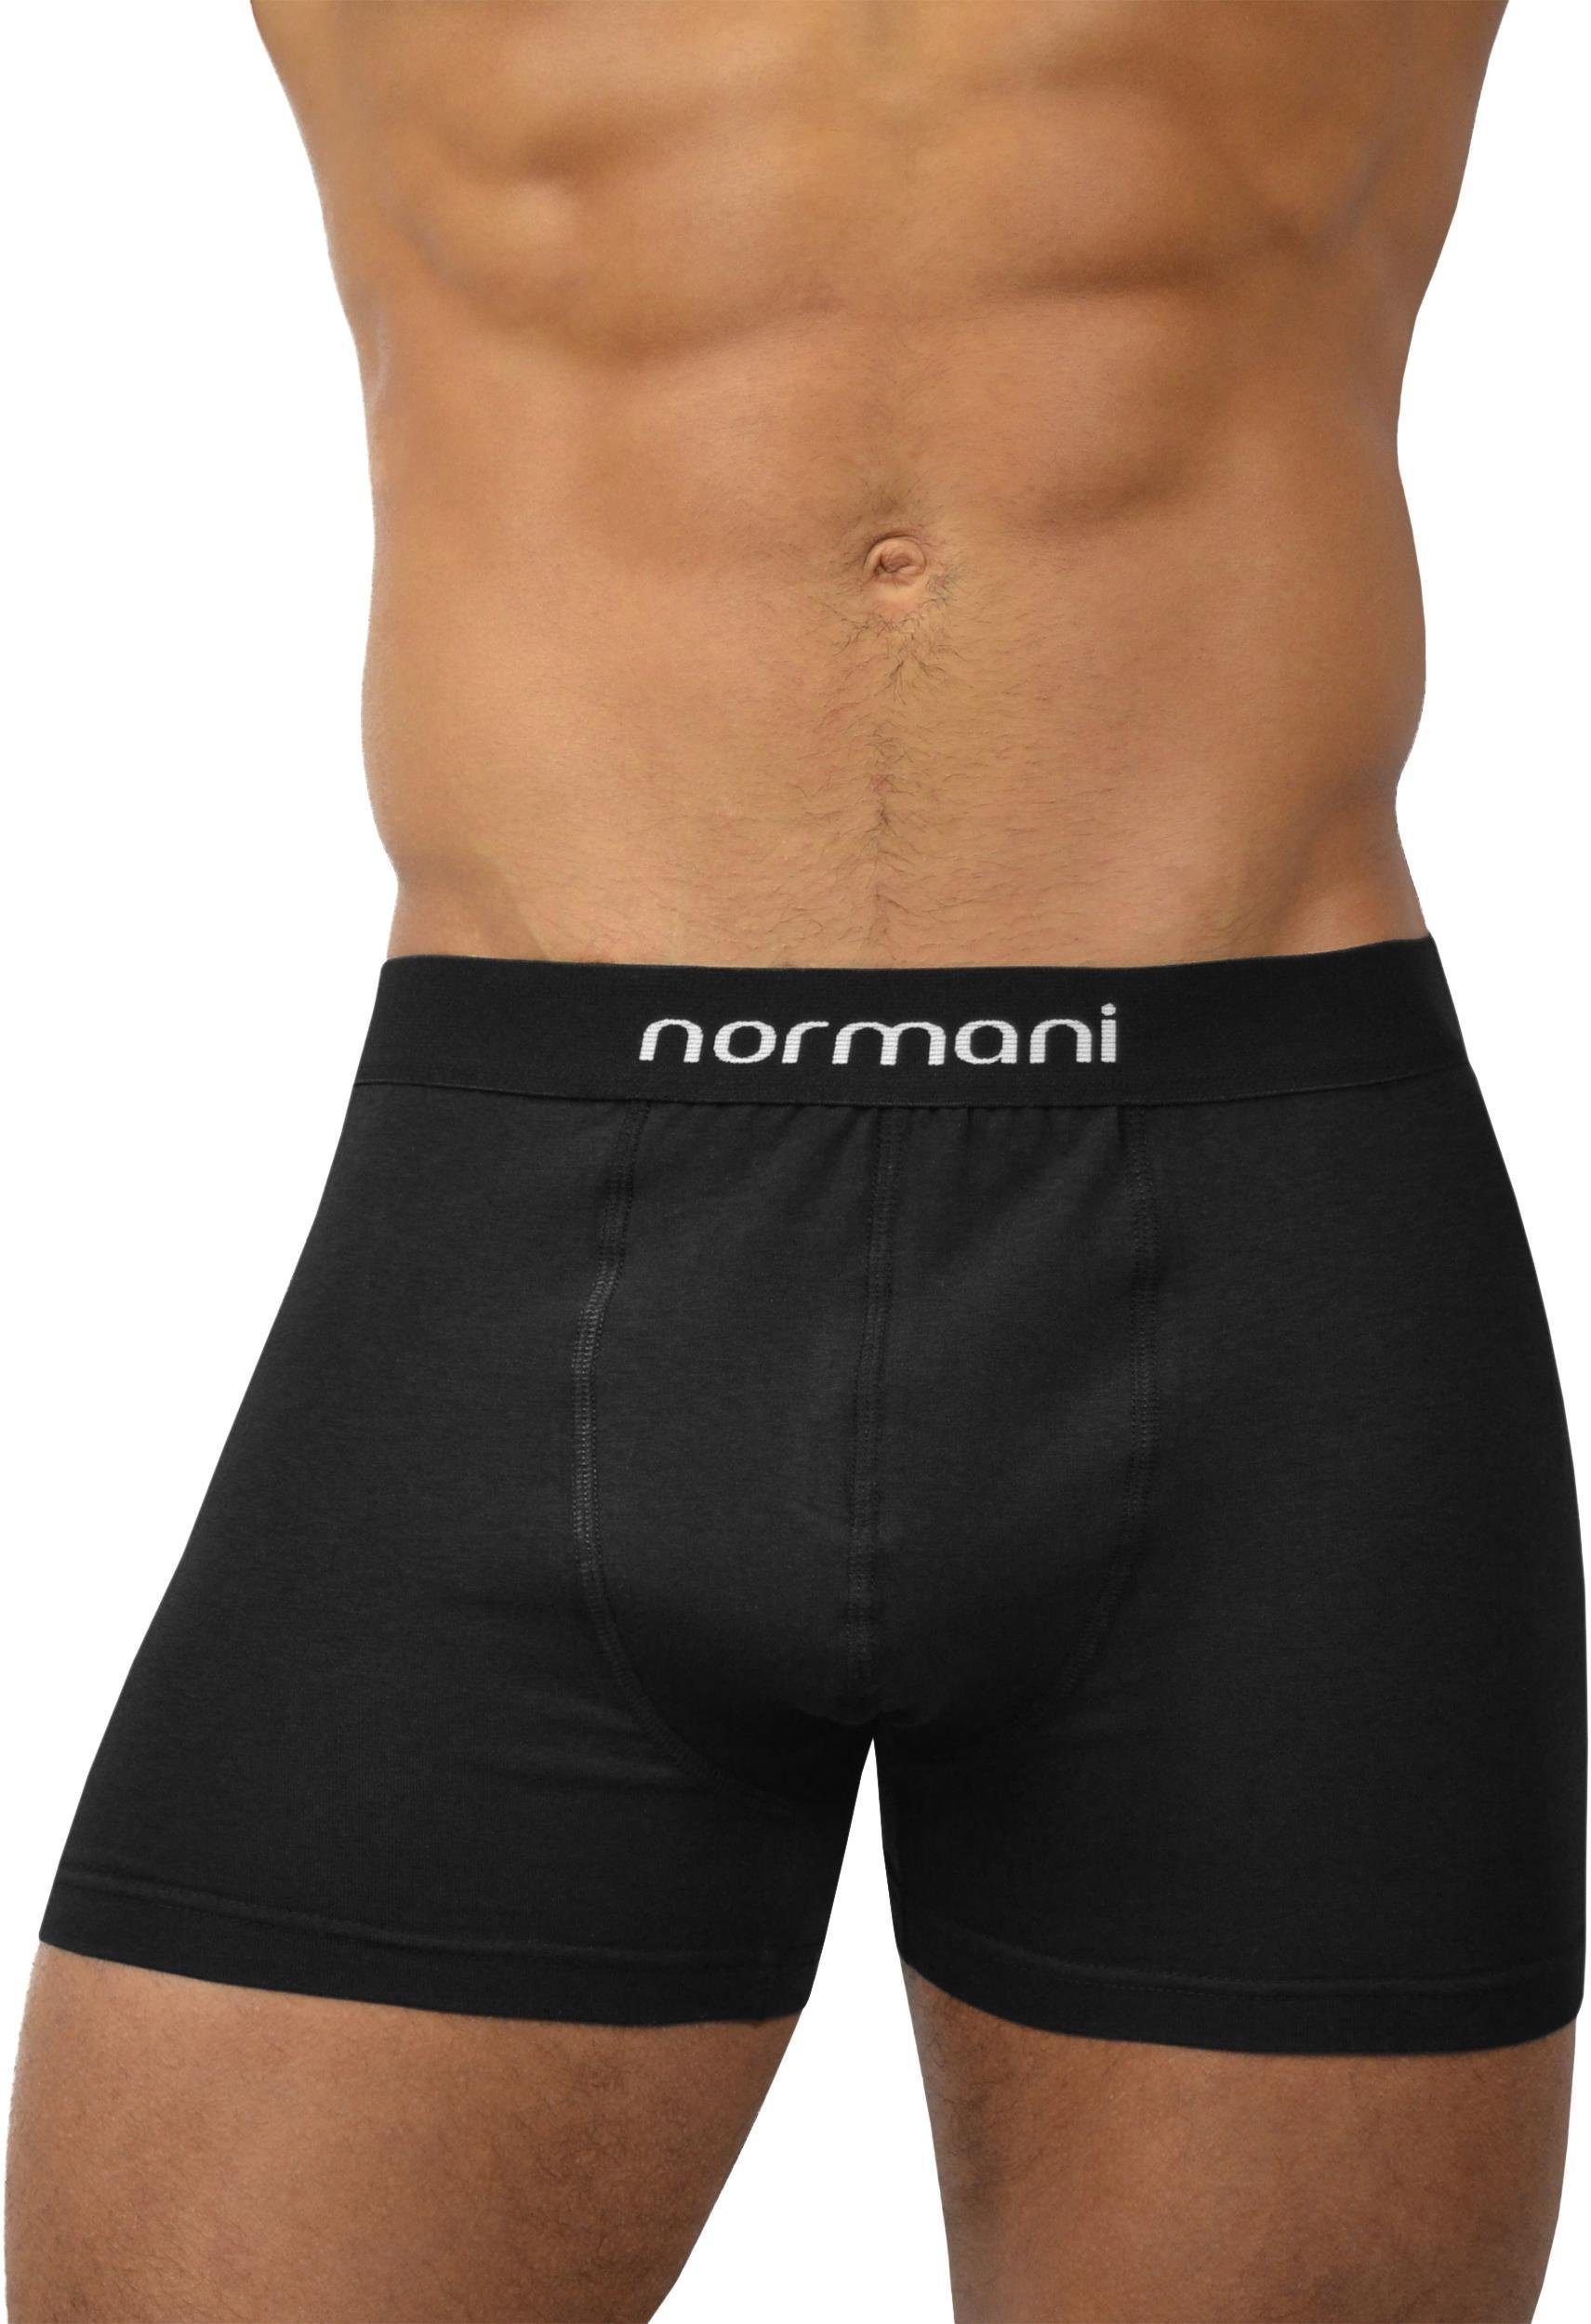 Black aus Retro aus Retro Unterhose Baumwolle atmungsaktiver 6 Baumwolle Stück Basic normani Boxer Boxershorts